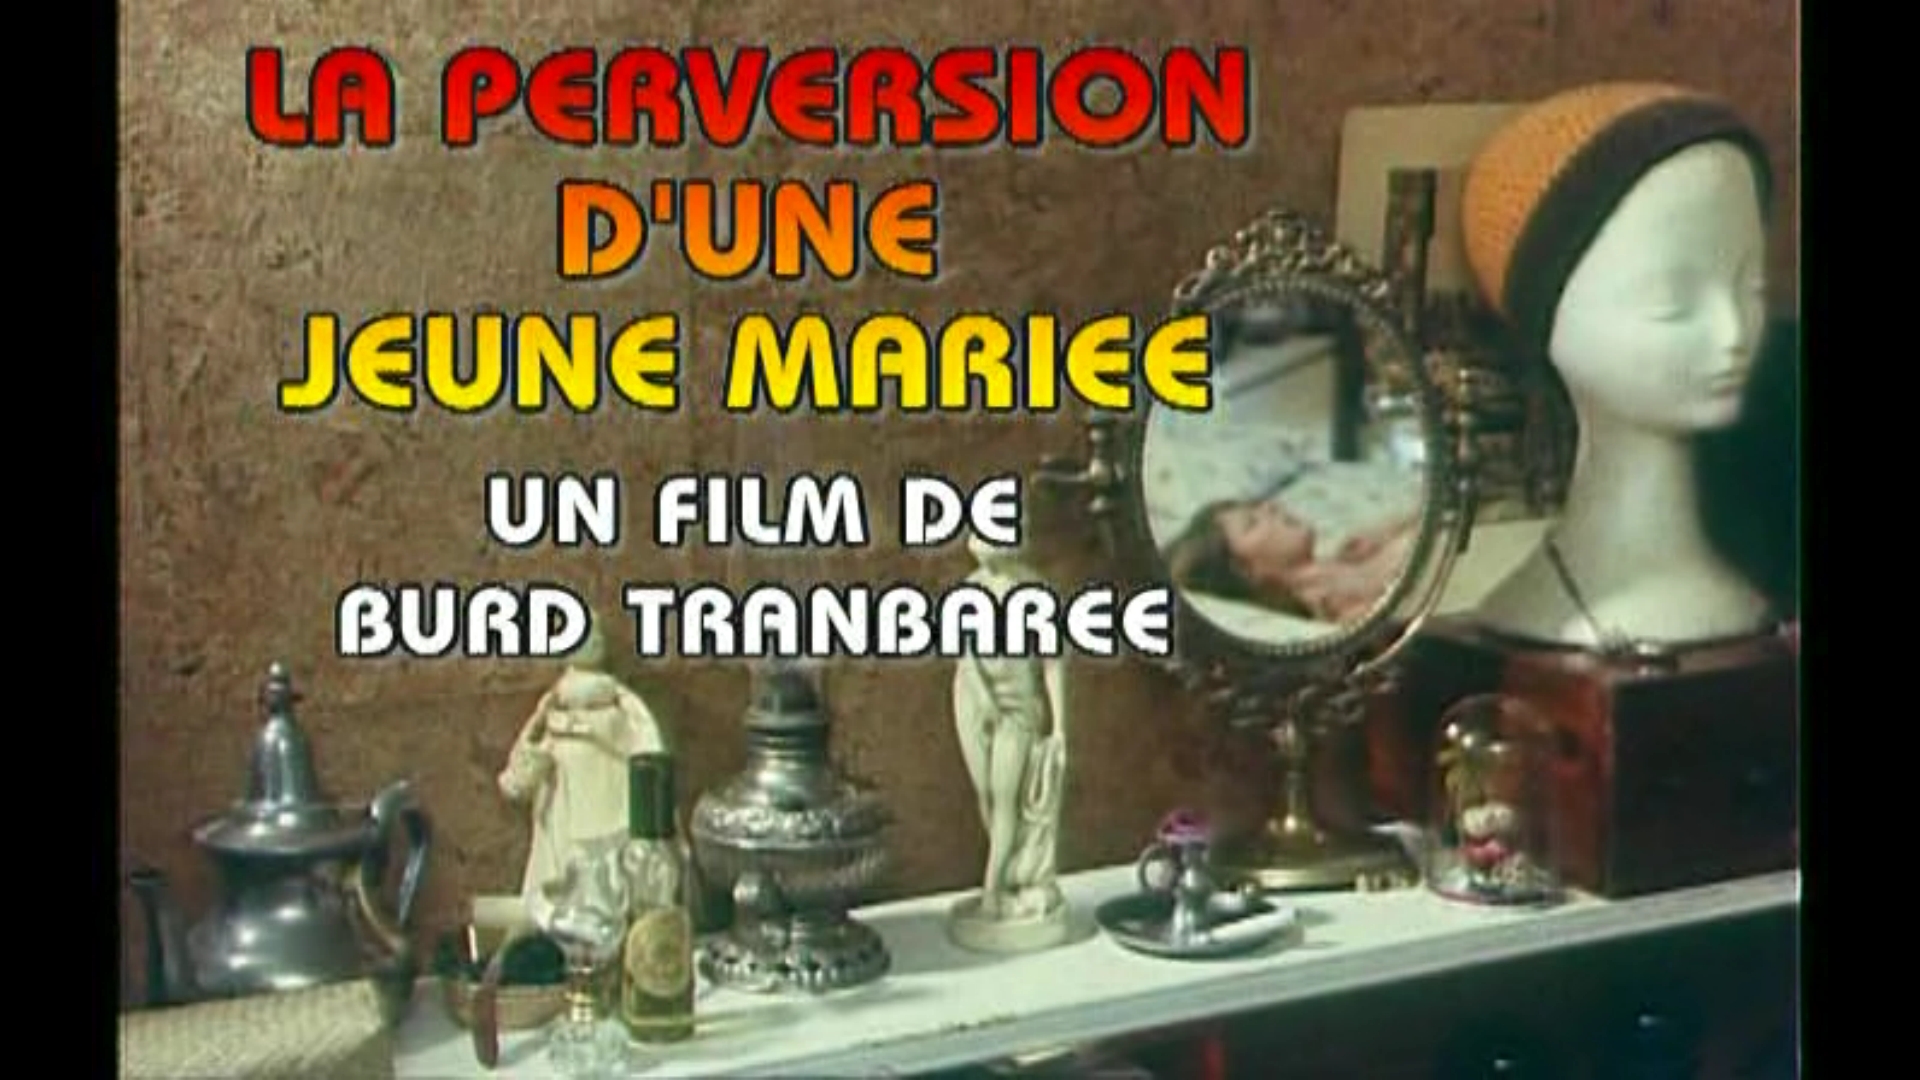 La Perversion d'une jeune mariée (1977) Обнаженные сцены